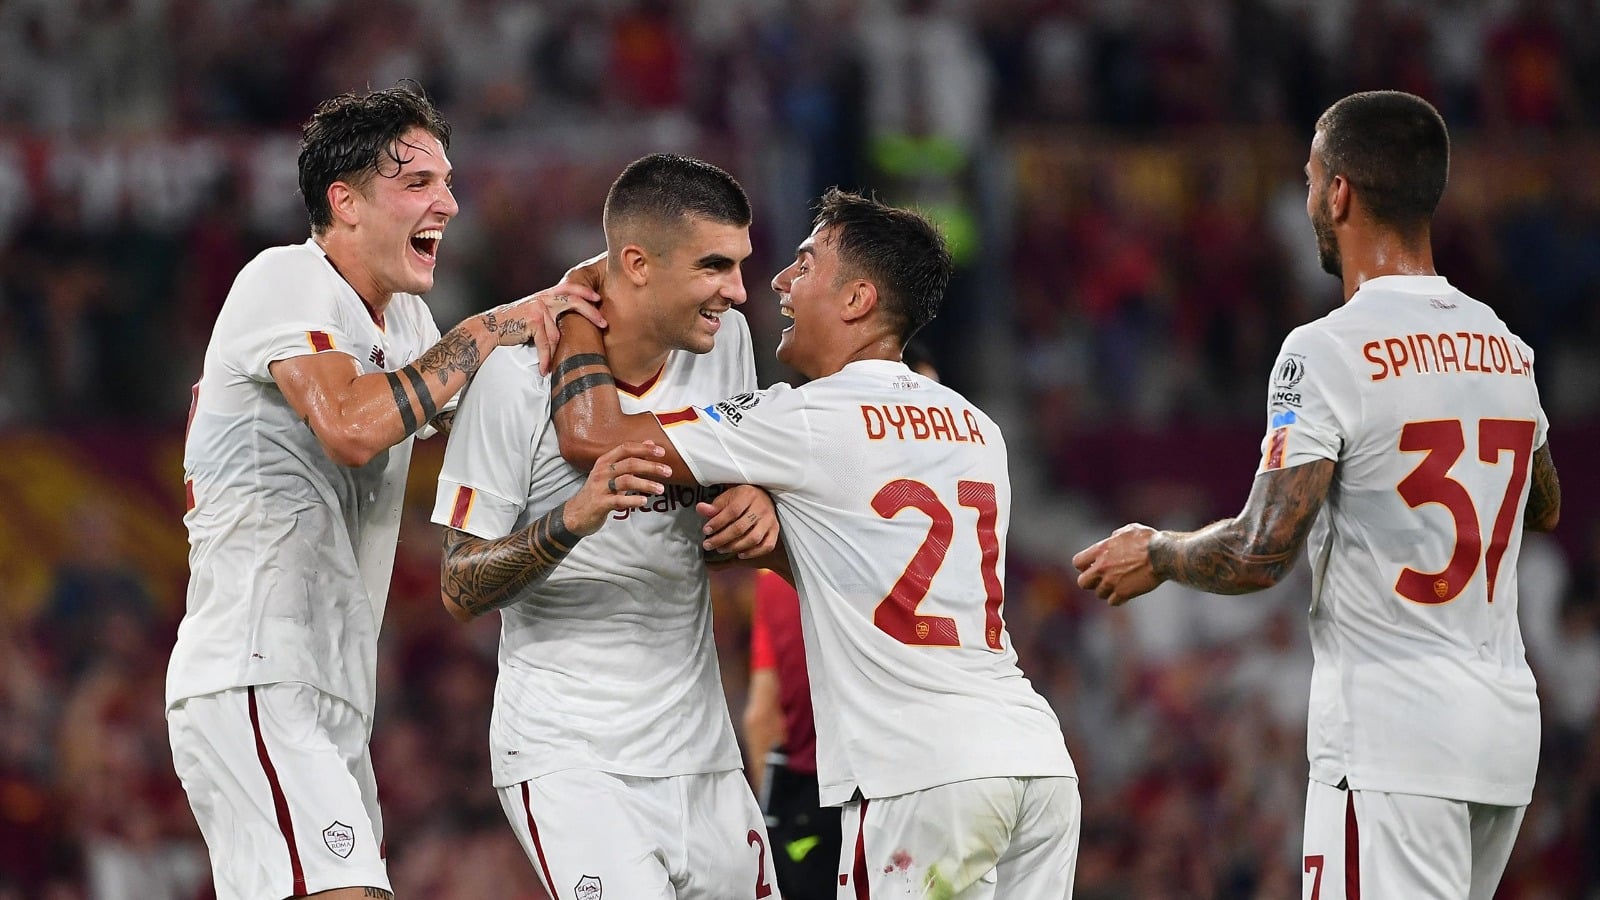 Feyenoord – AS Roma: Les équipes officielles avec Dybala